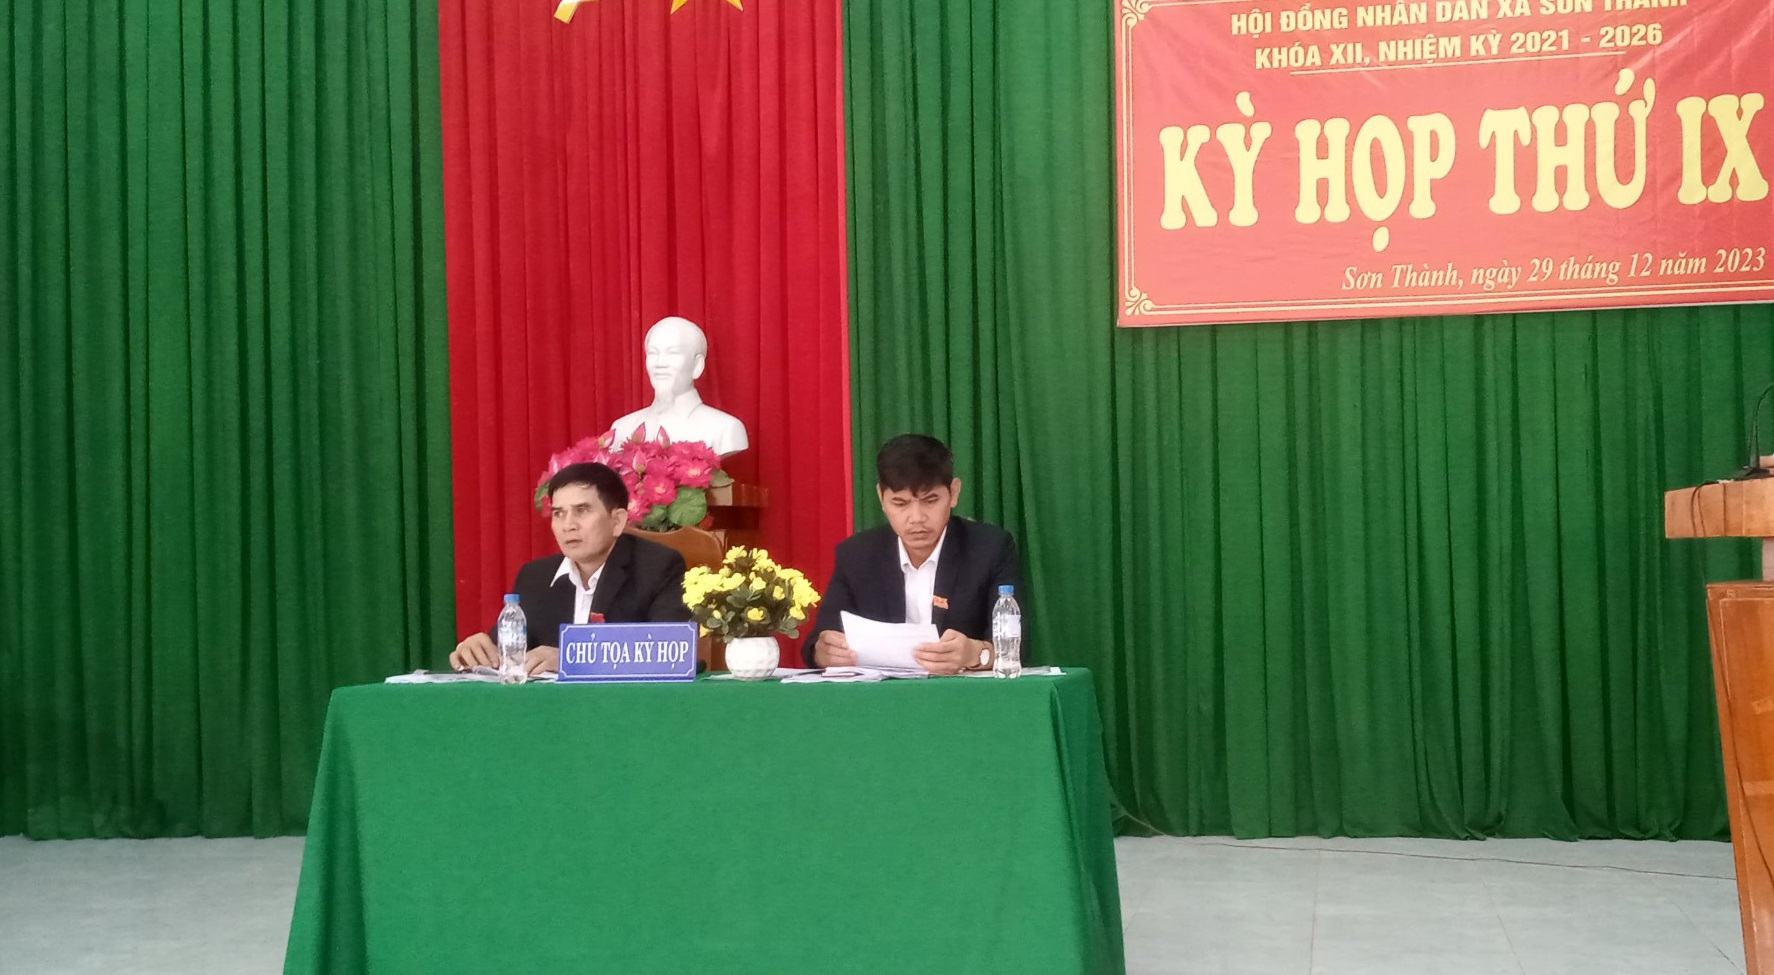 Hội đồng nhân dân xã Sơn Thành tổ chức thành công kỳ họp thứ 9 (kỳ họp cuối năm 2023) khóa XII, nhiệm kỳ 2021 – 2026